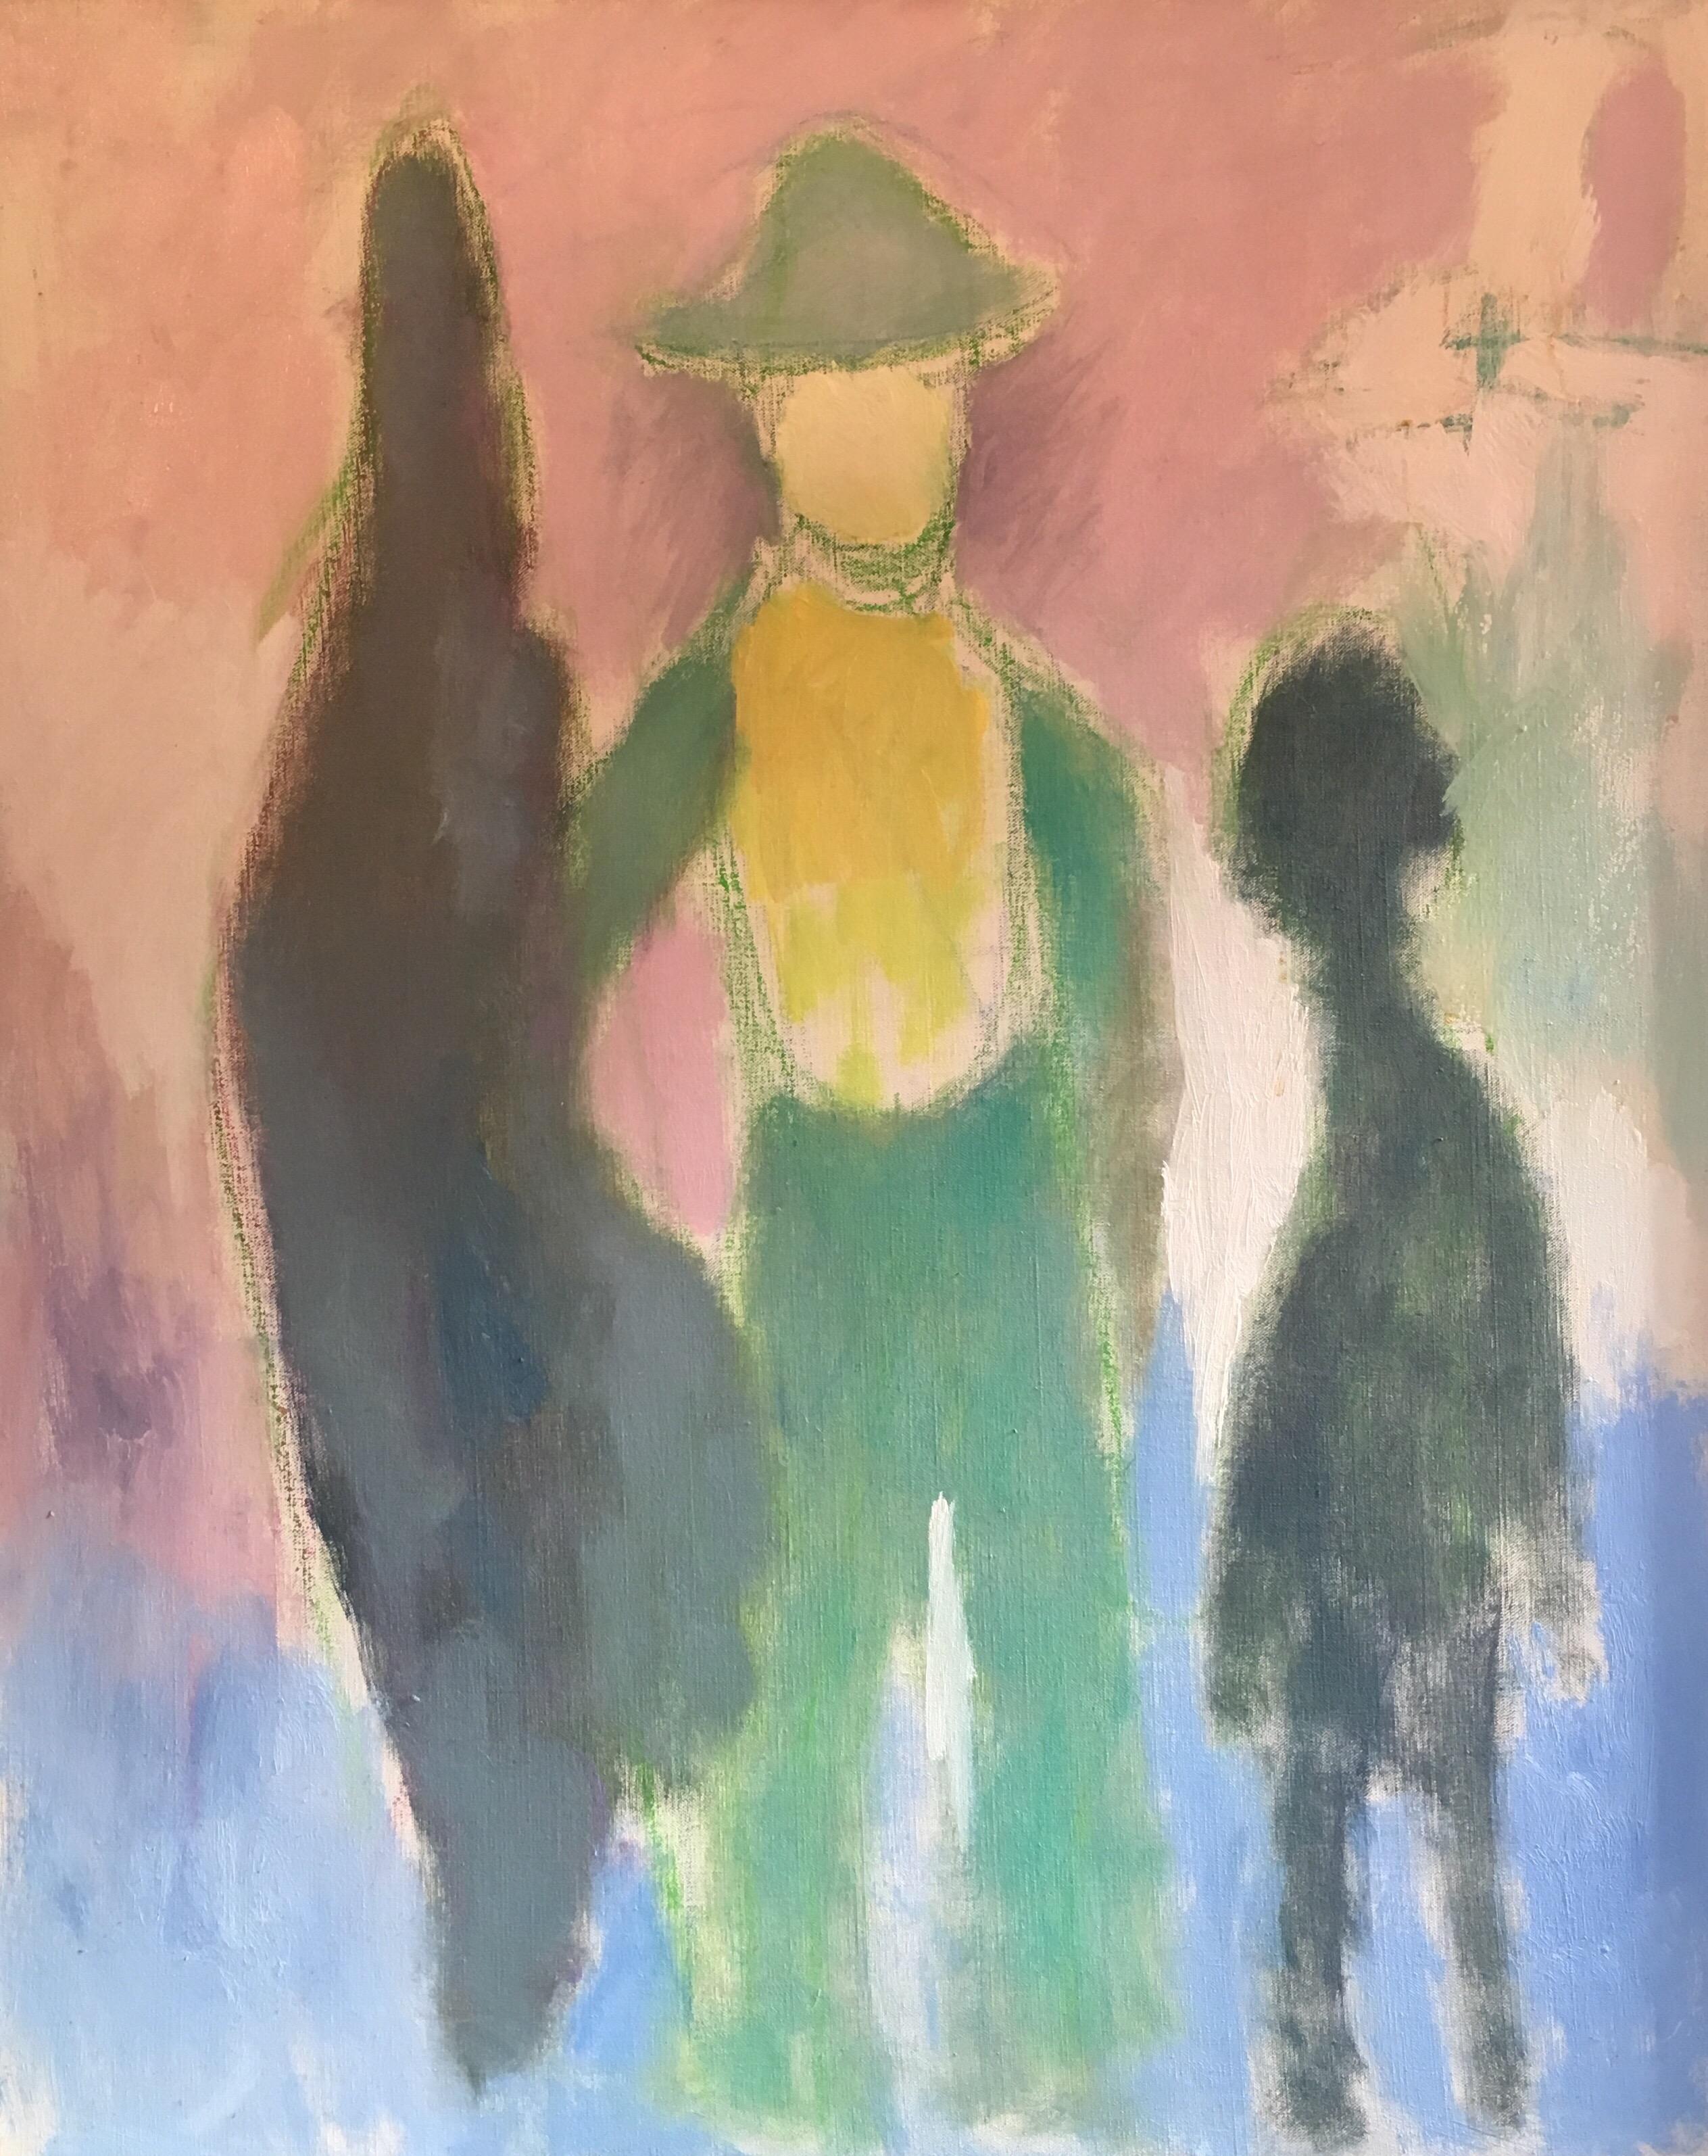 Portrait Painting Akos Biro - Peinture à l'huile abstraite colorée rose pastel des années 1970, d'origine